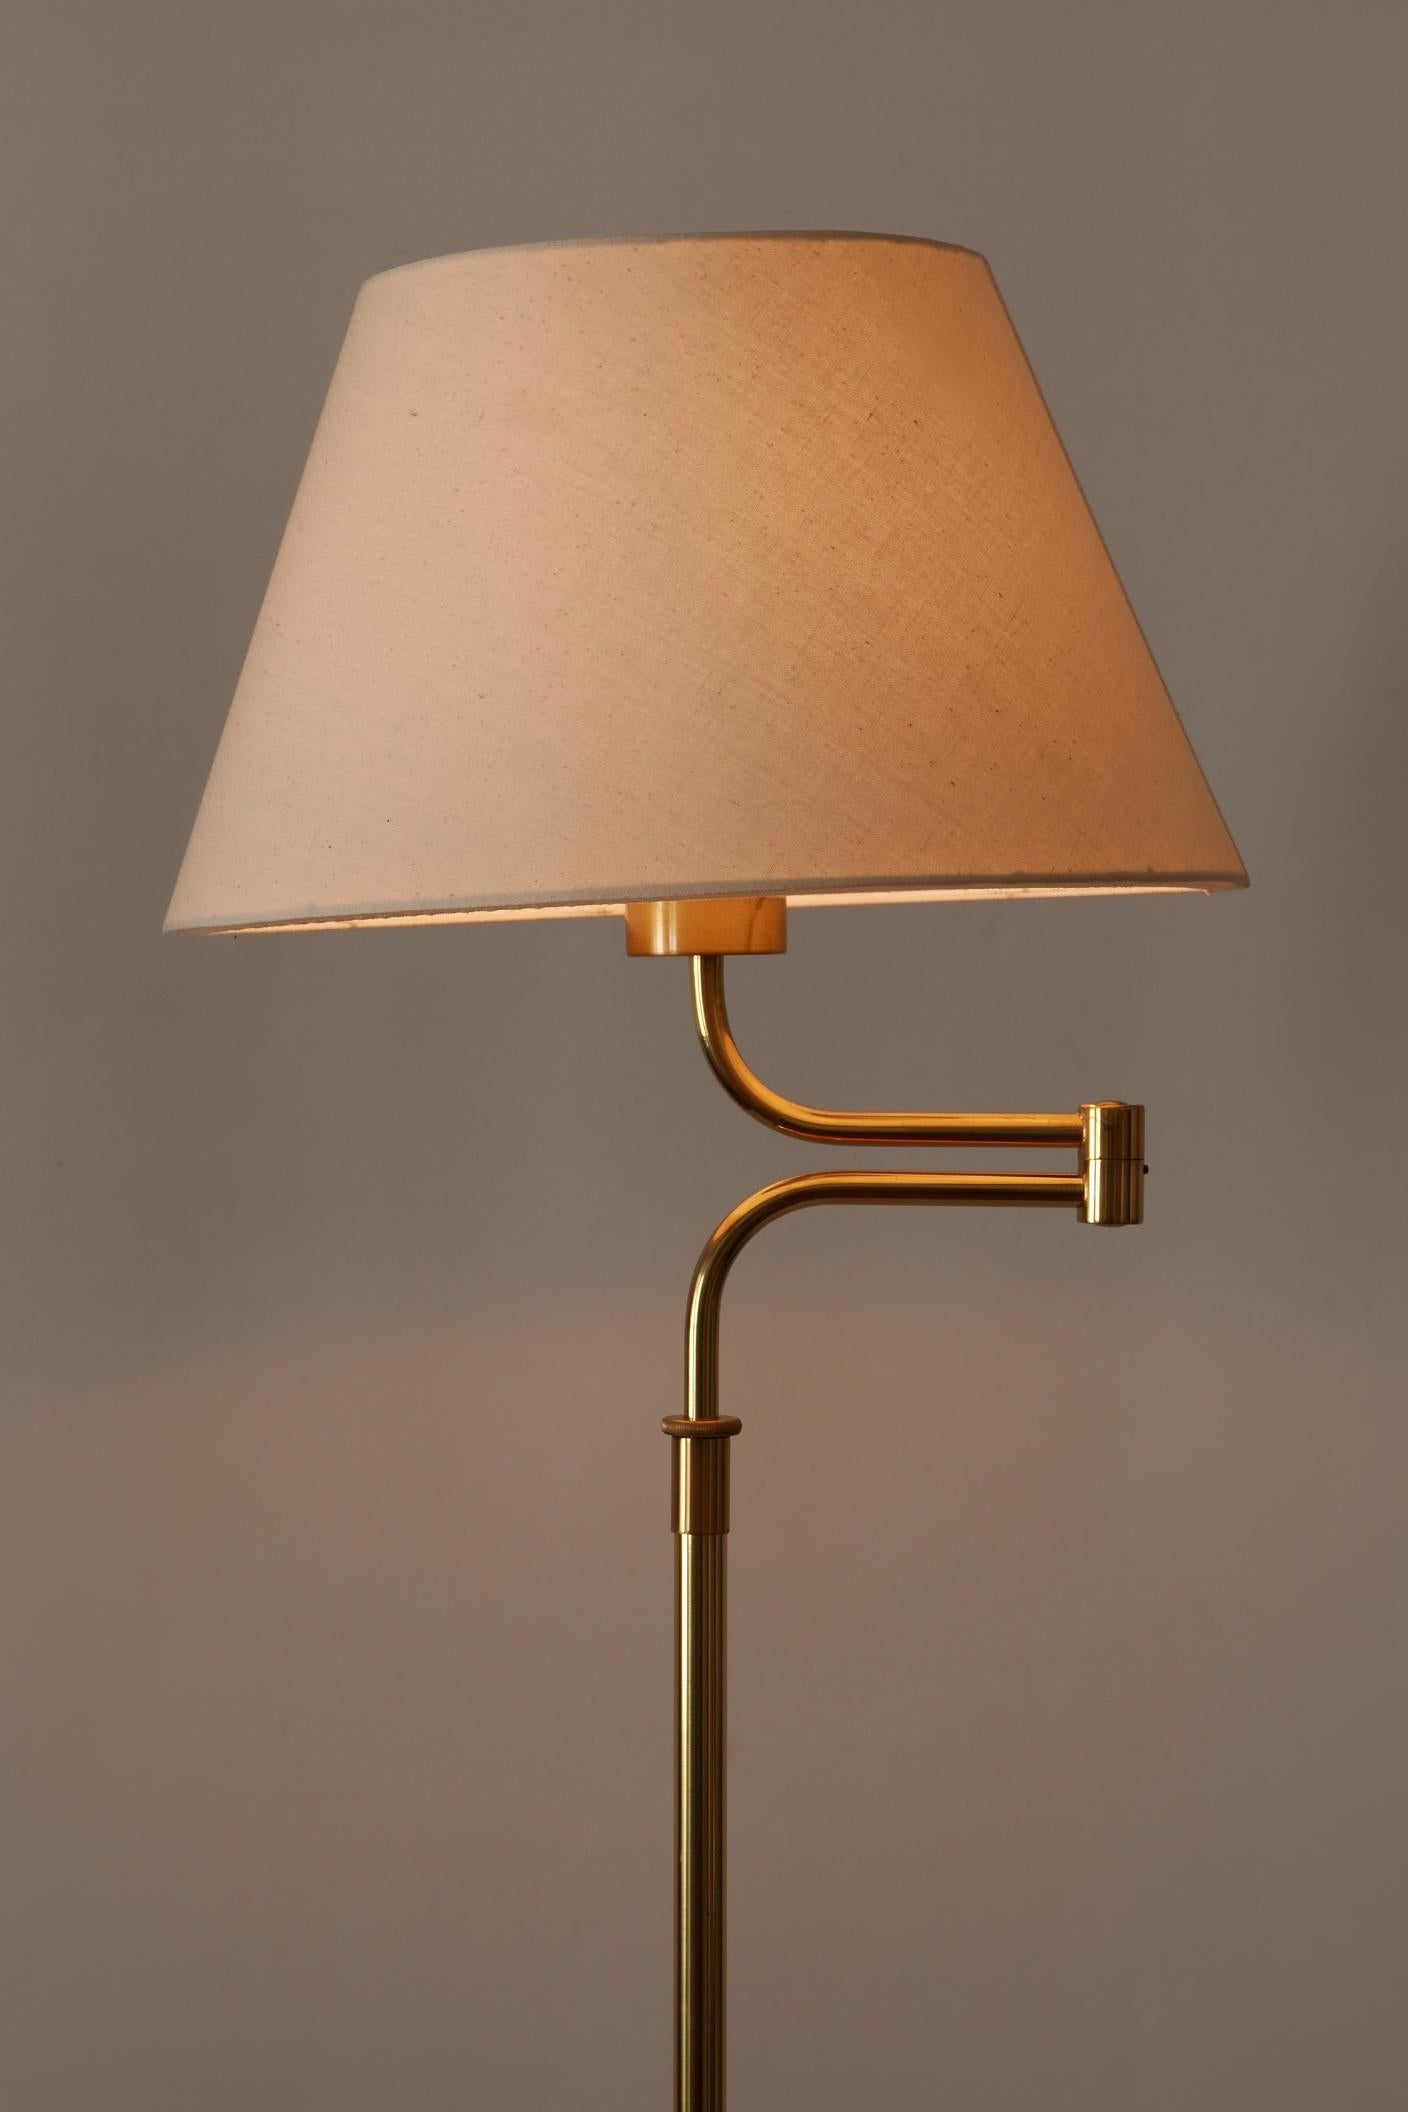 Adjustable Vintage Floor Lamp or Reading Light by Sölken Leuchten Germany 1980s For Sale 5